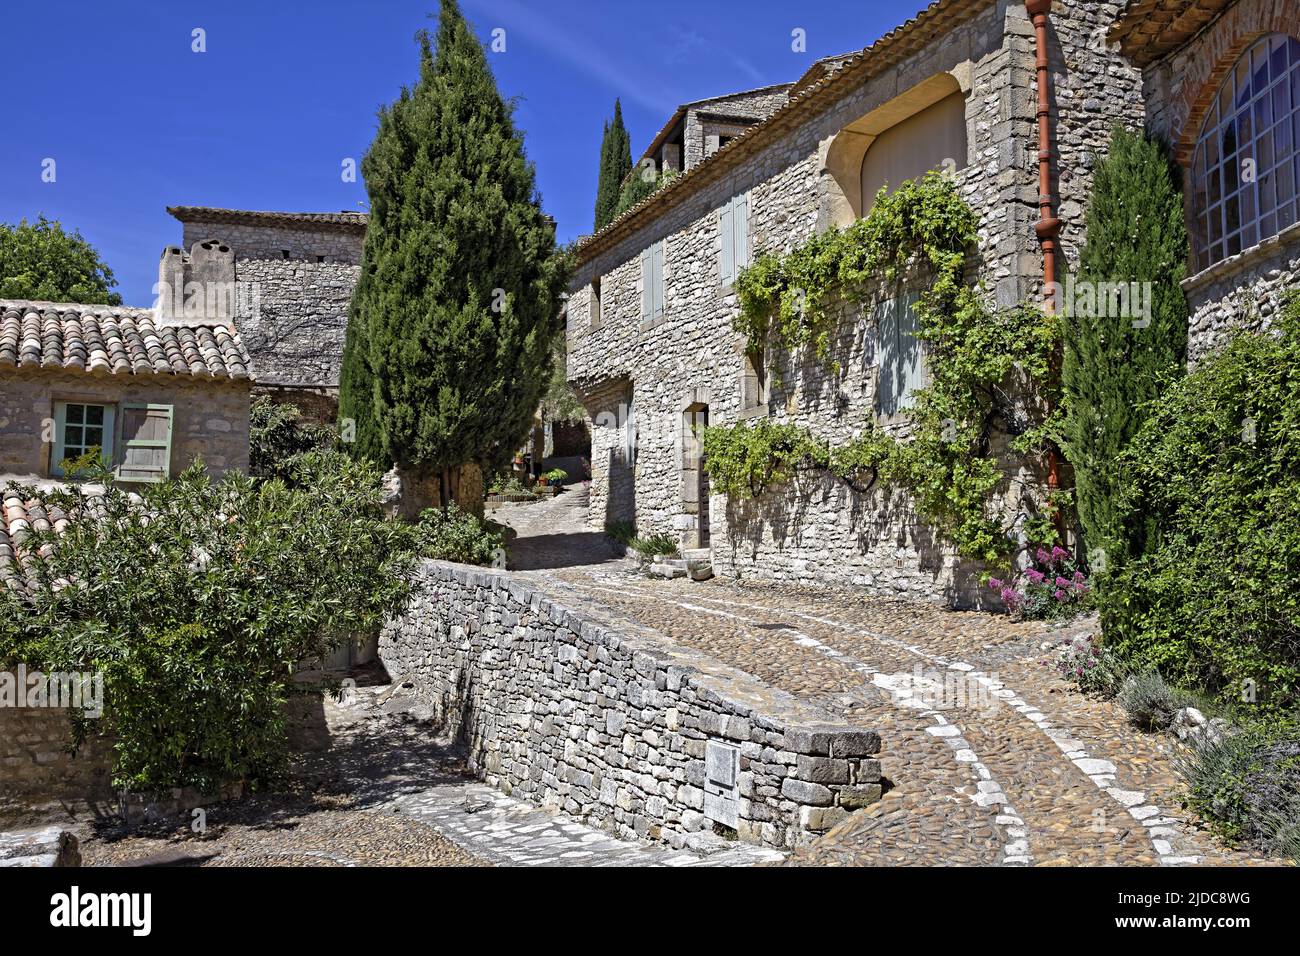 France, Gard, la Roque-sur-Cèze, les rues du village Banque D'Images